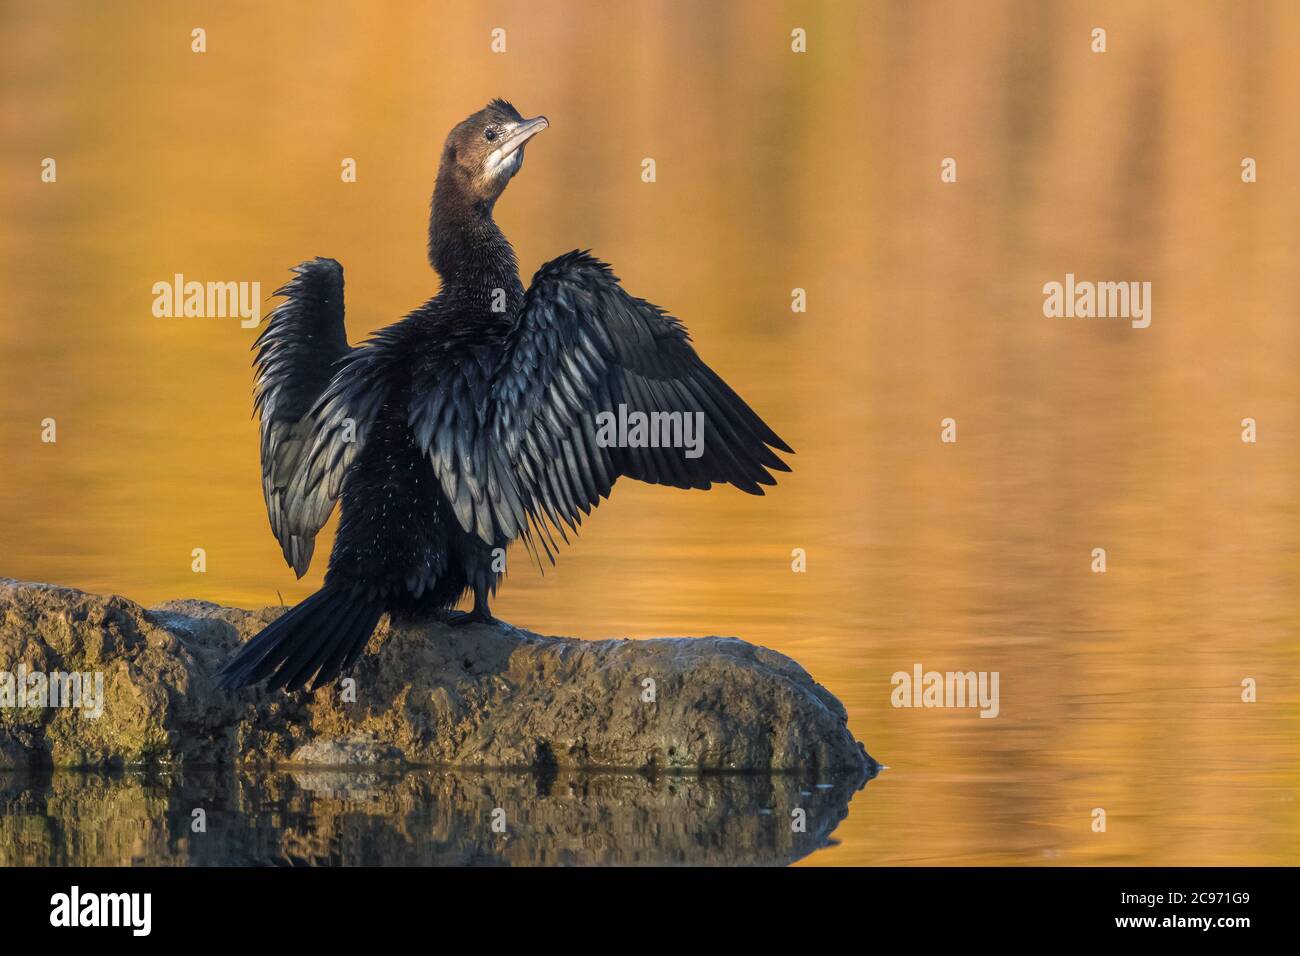 Cormoran pygmée (Phalacrocorax pygmeus, Microcarbo pygmaeus), jeunes oiseaux perches sur une roche dans l'eau et le séchage de ses ailes, vue arrière, Italie, Piana fiorentina Banque D'Images